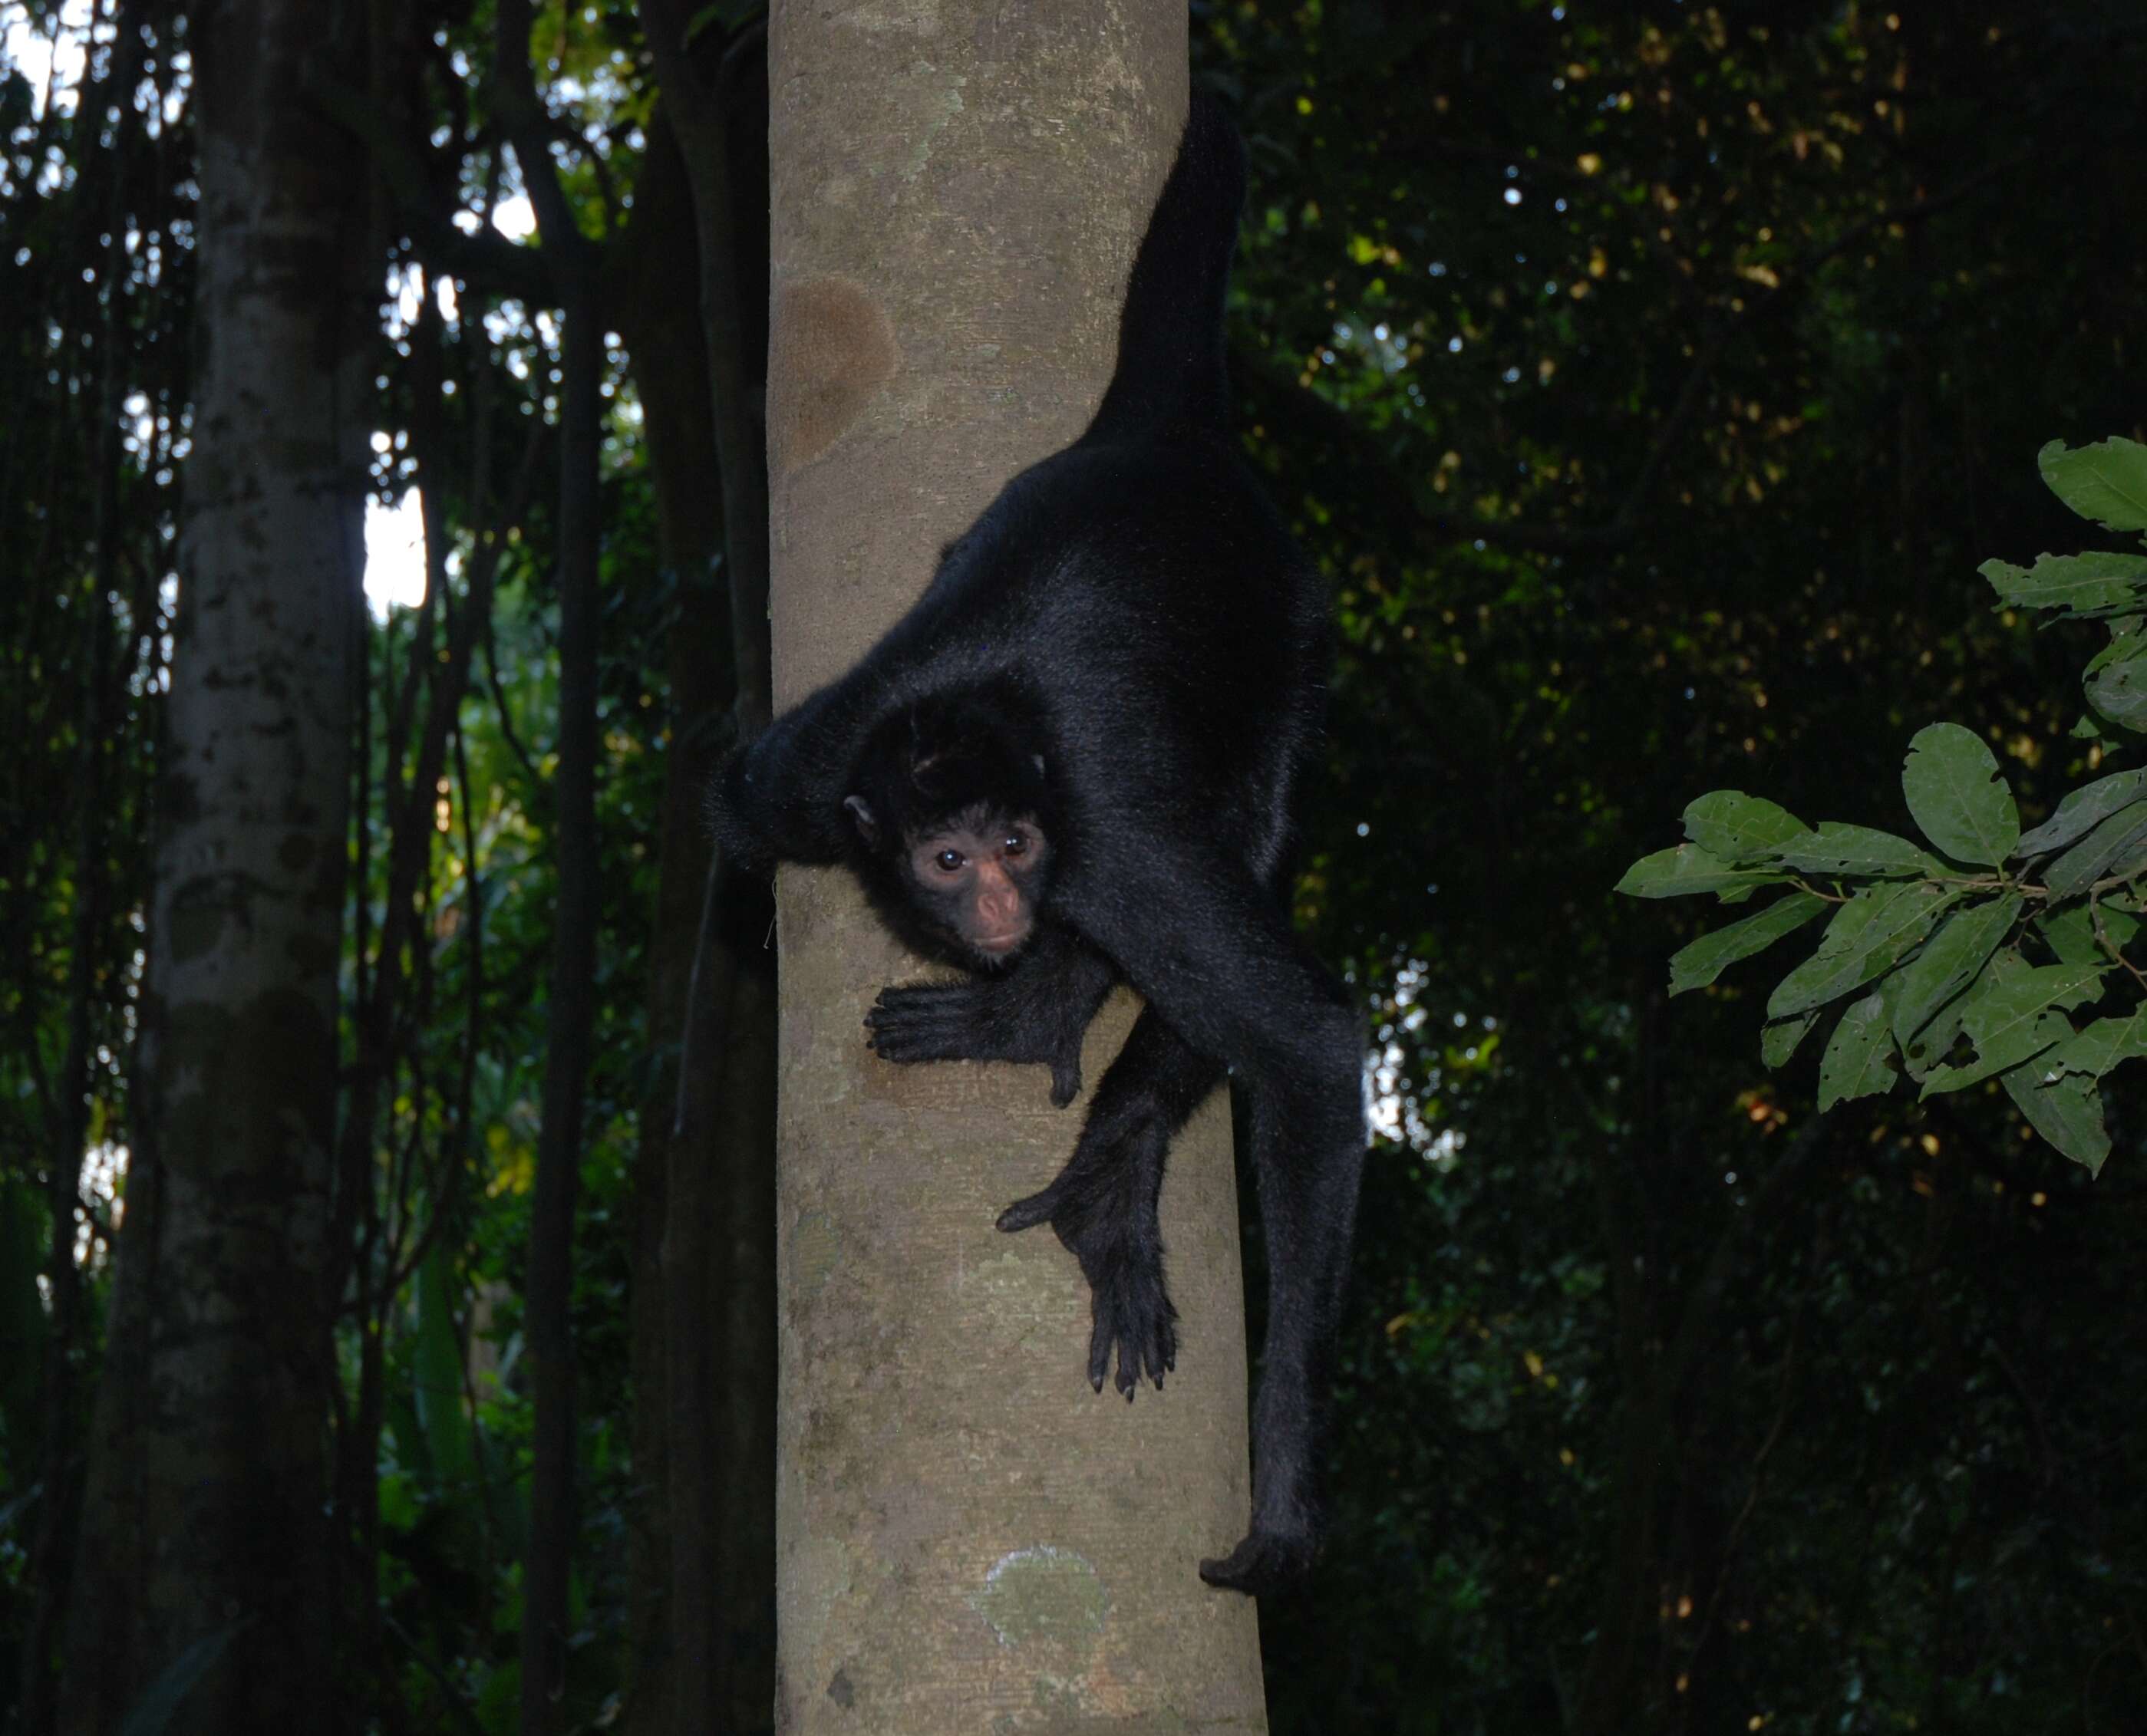 Image of Black-faced Black Spider Monkey